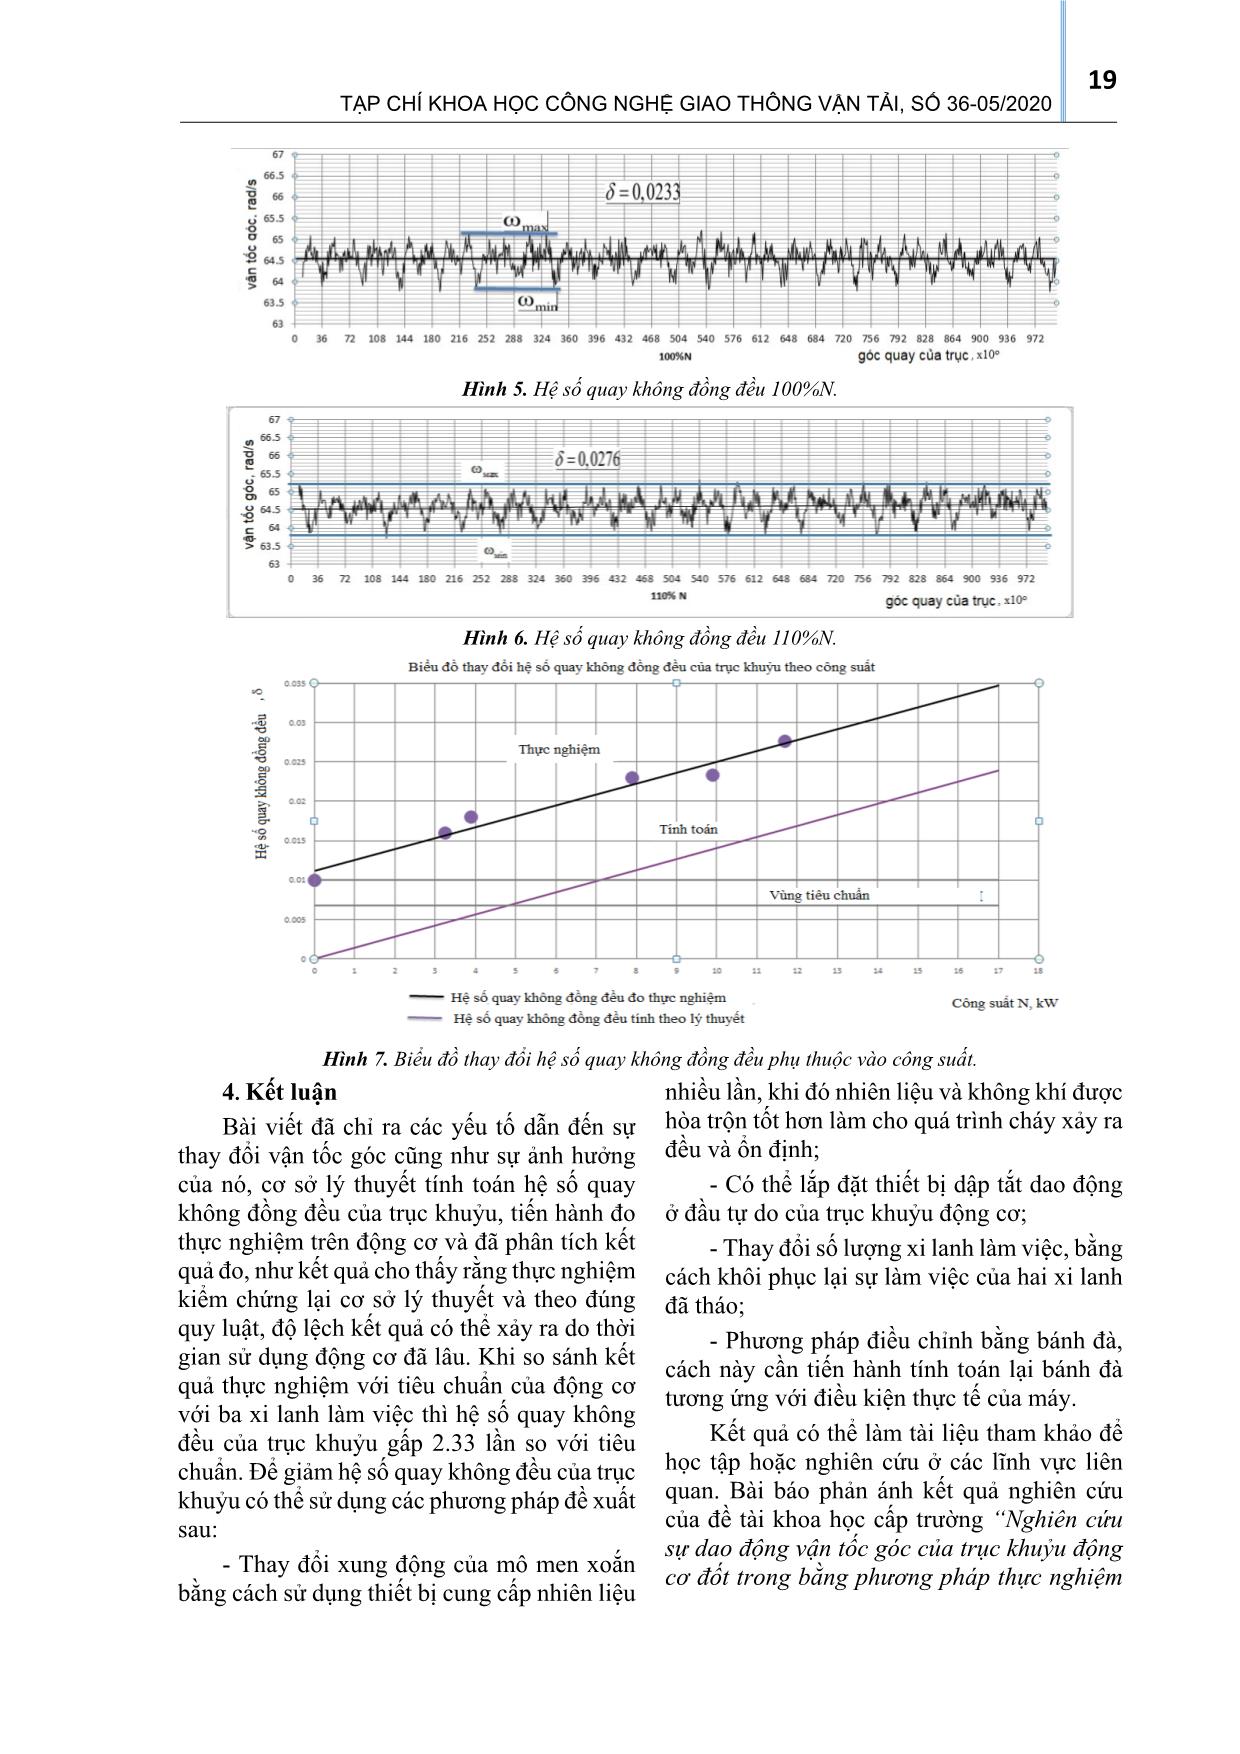 Nghiên cứu sự dao động vận tốc góc của trục khuỷu động cơ đốt trong bằng phương pháp thực nghiệm trên động cơ 1ч17,5/24 trang 5